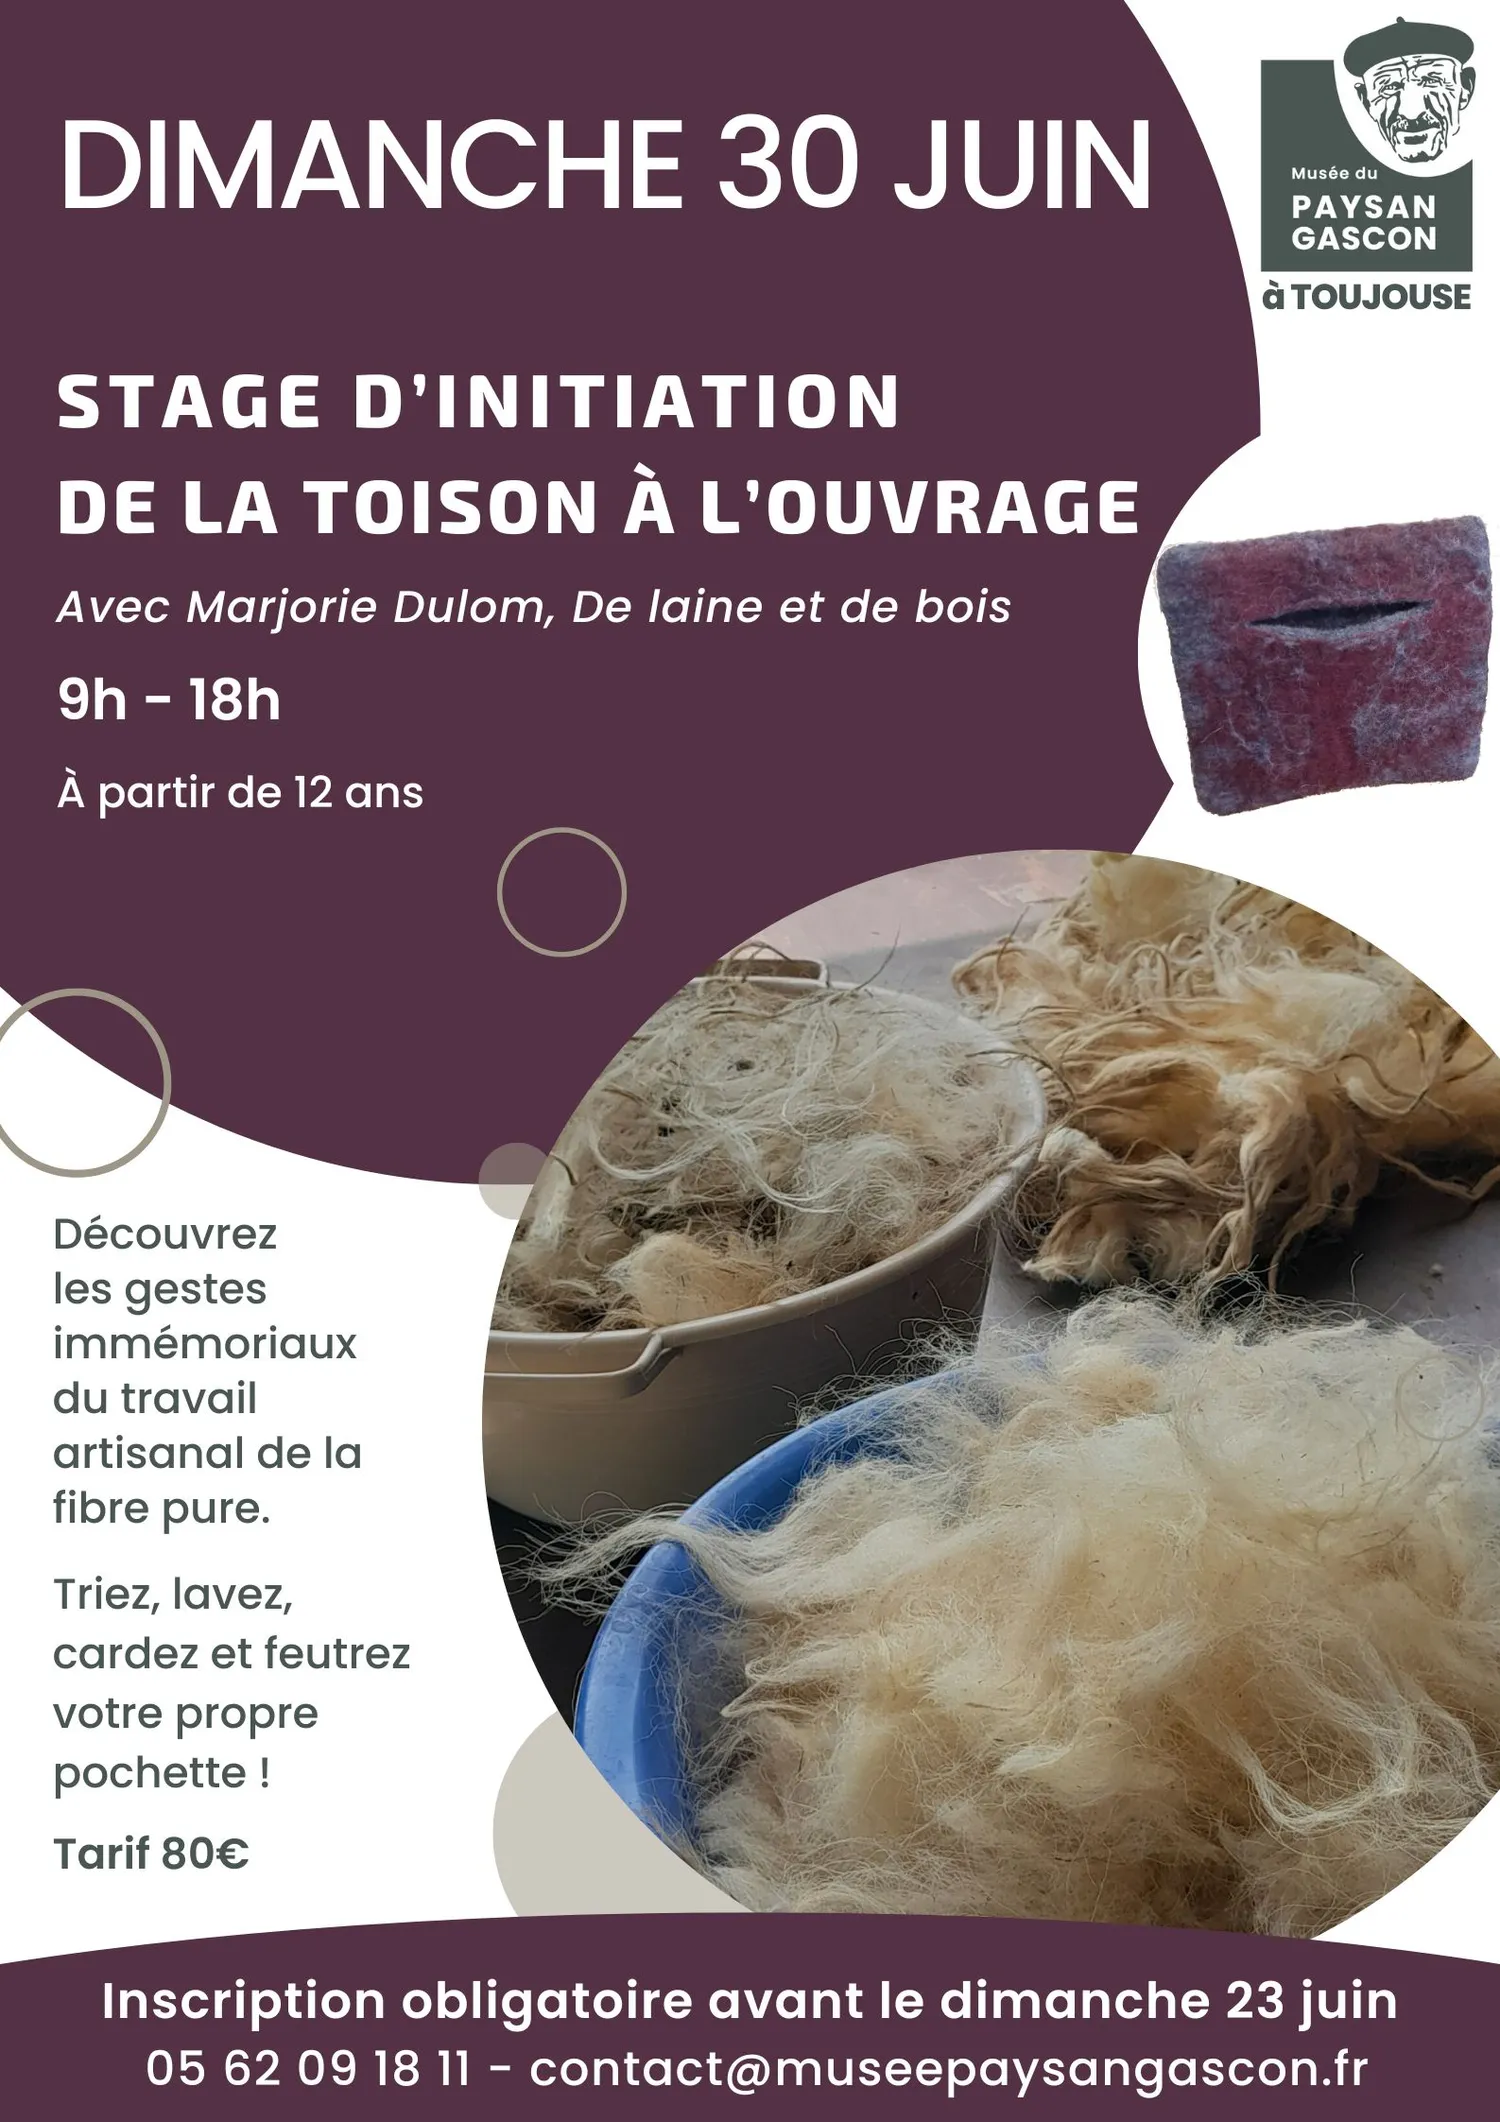 Image qui illustre: Stage d’initiation "De la toison à l’ouvrage" au Musée du Paysan Gascon à Toujouse - 1